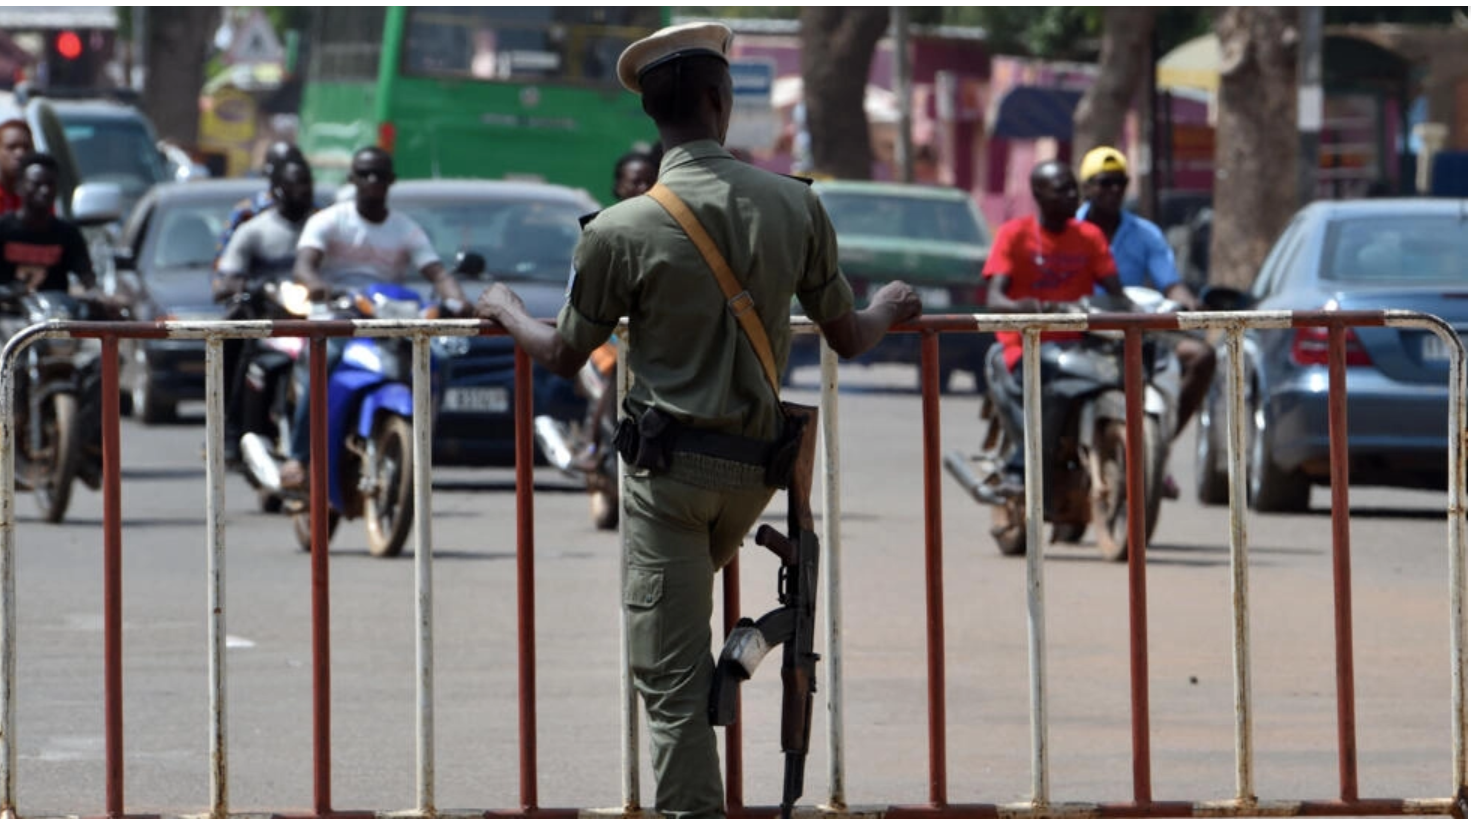 Burkina Faso: quatre fonctionnaires français arrêtés à Ouagadougou